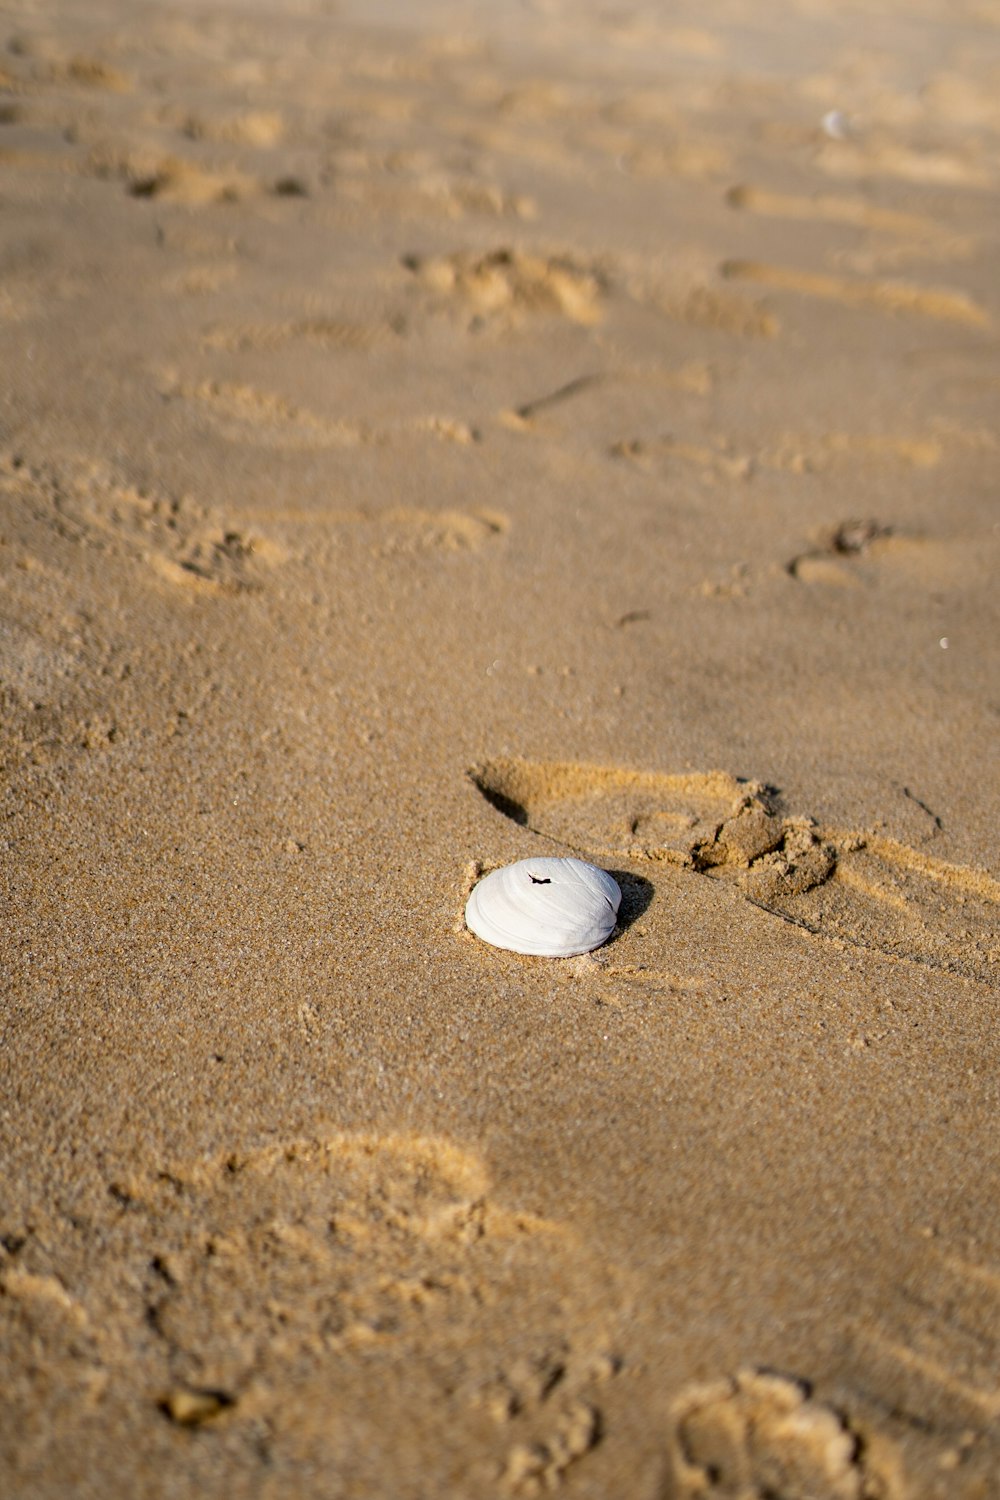 a snail on the sand